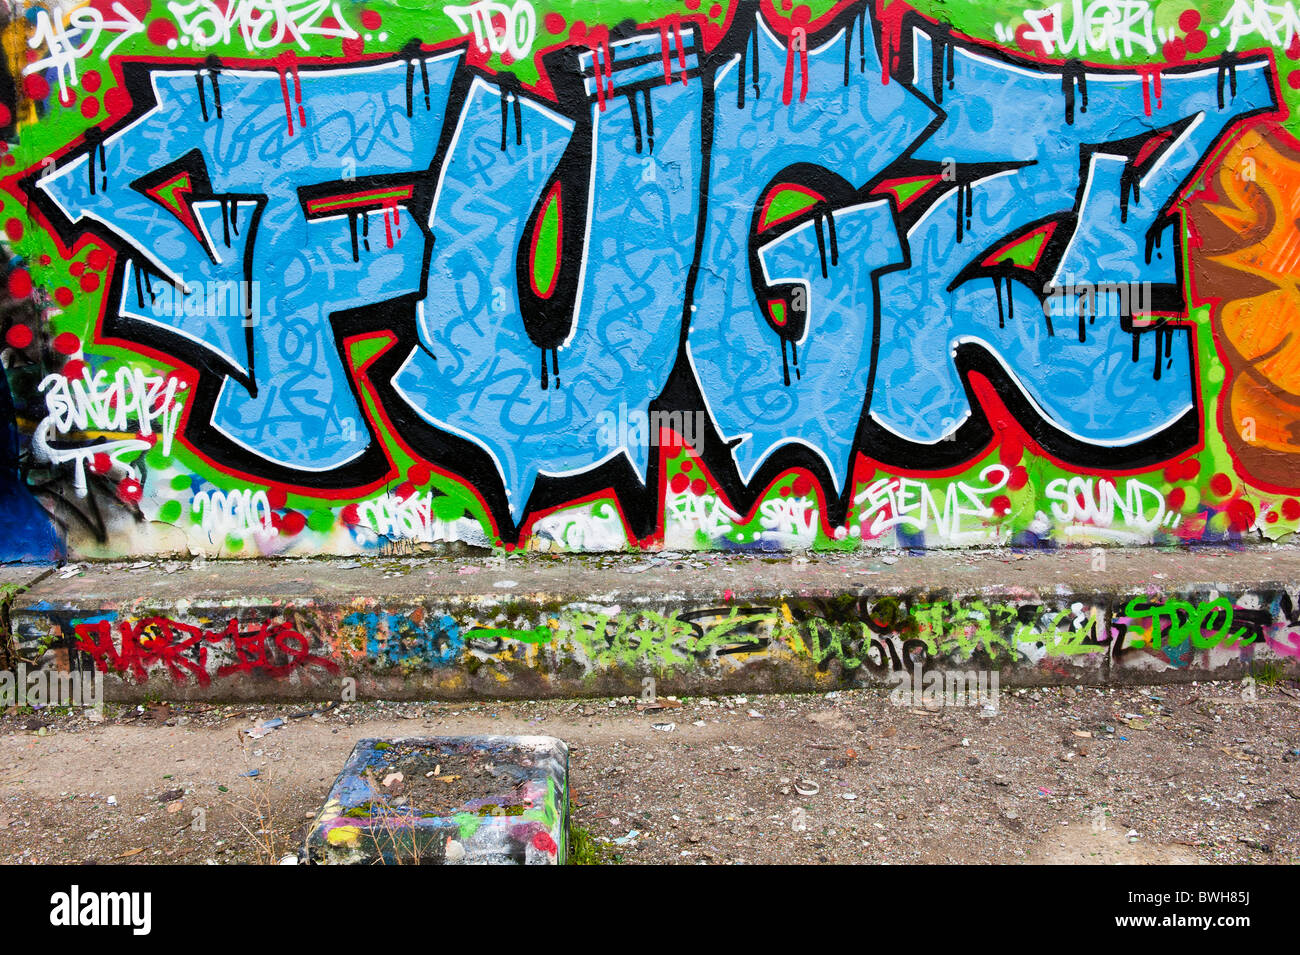 graffiti art words